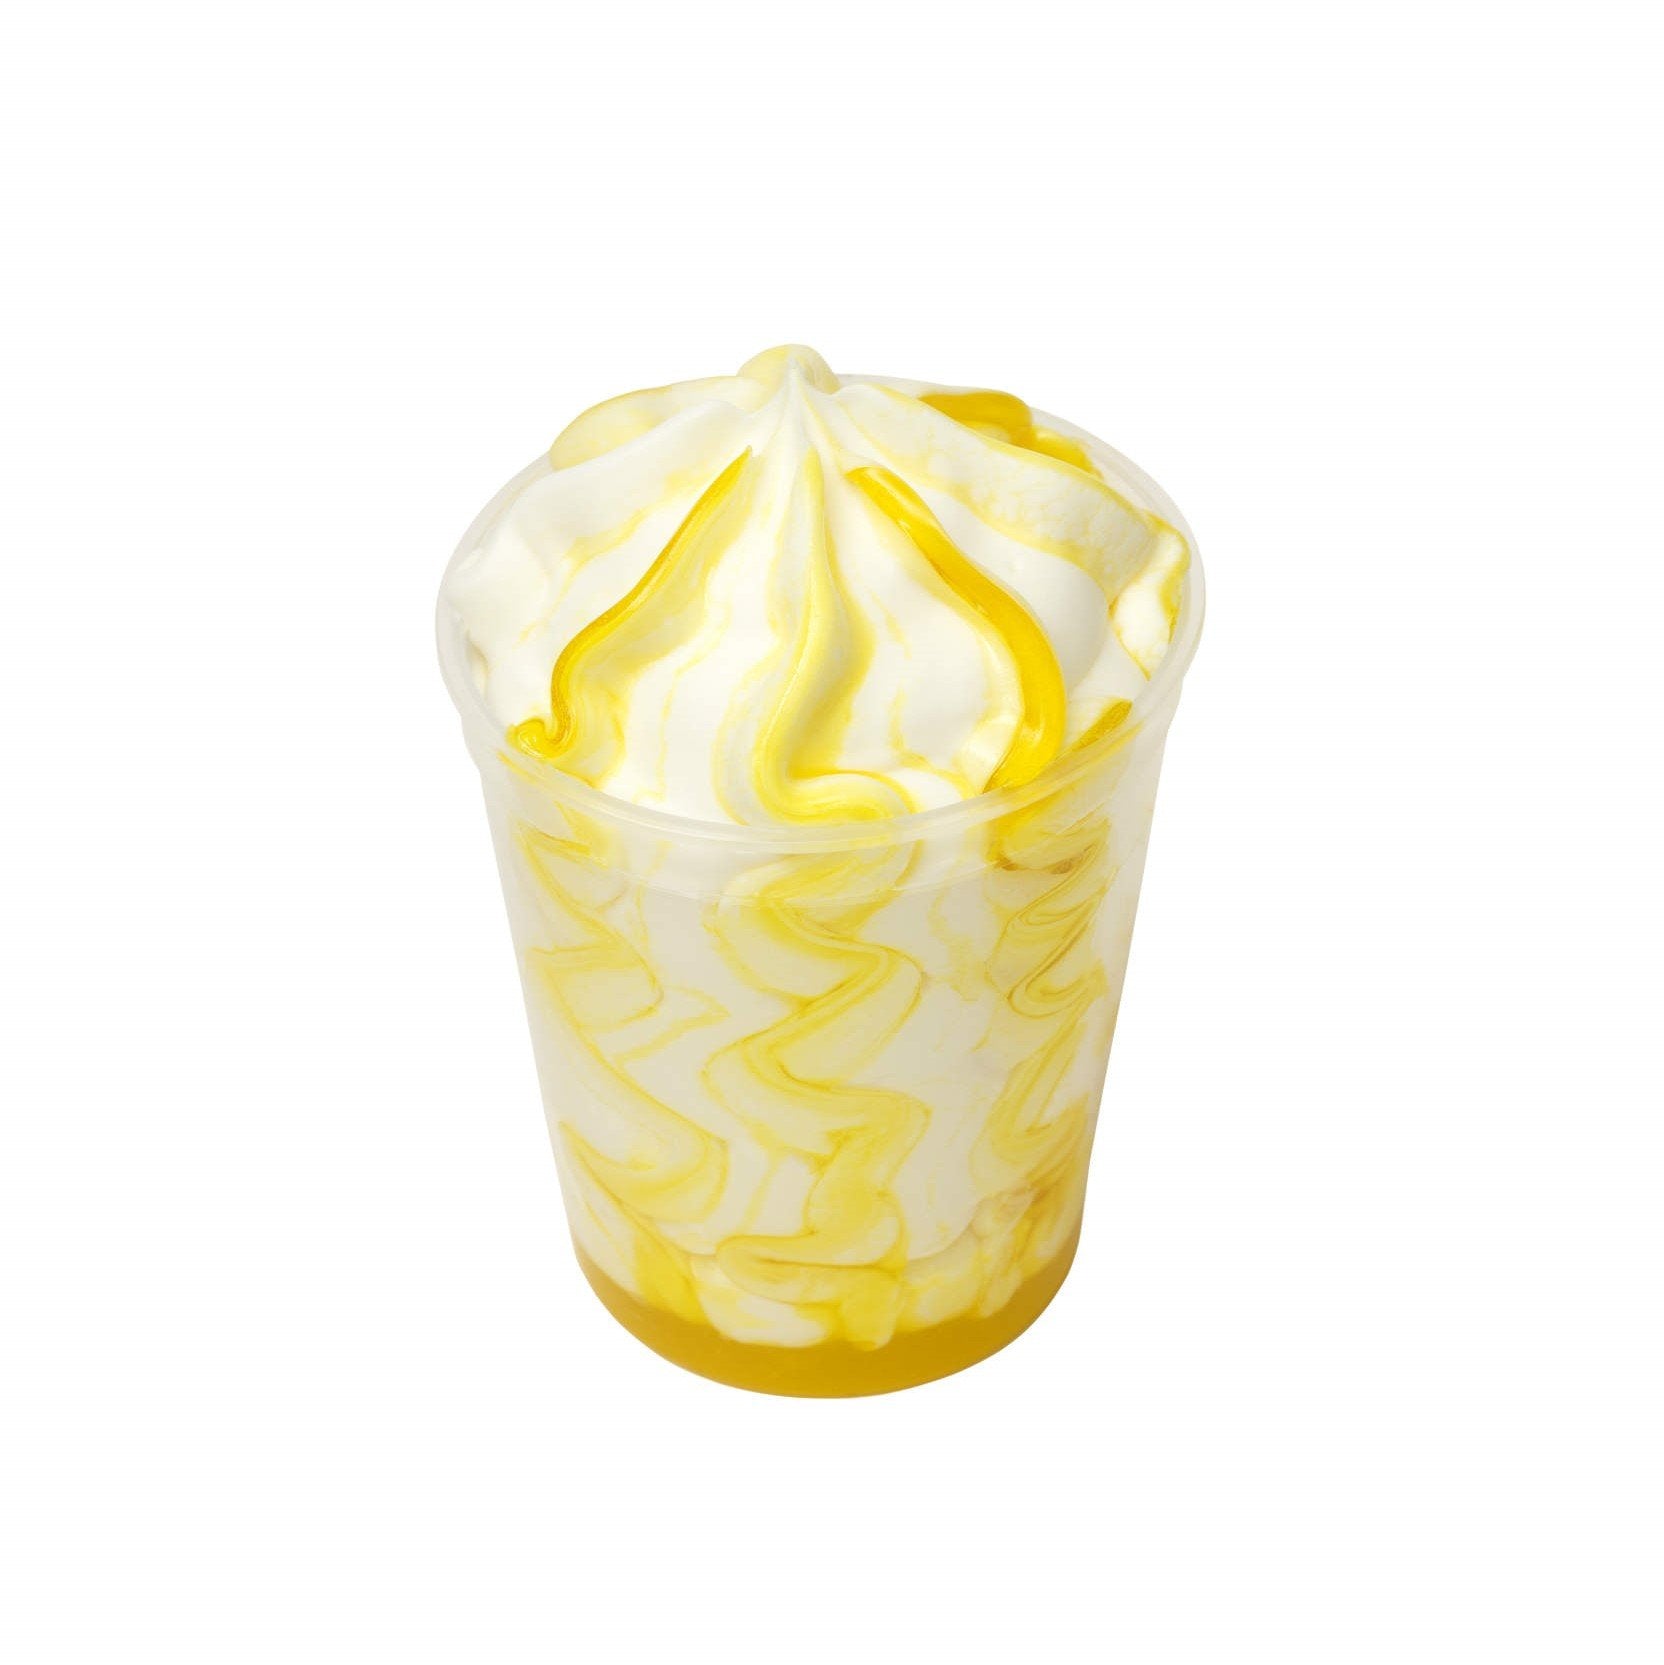 Coppetta Gelato Limoncello Bindi: gelato al limone con variegatura al limoncello.